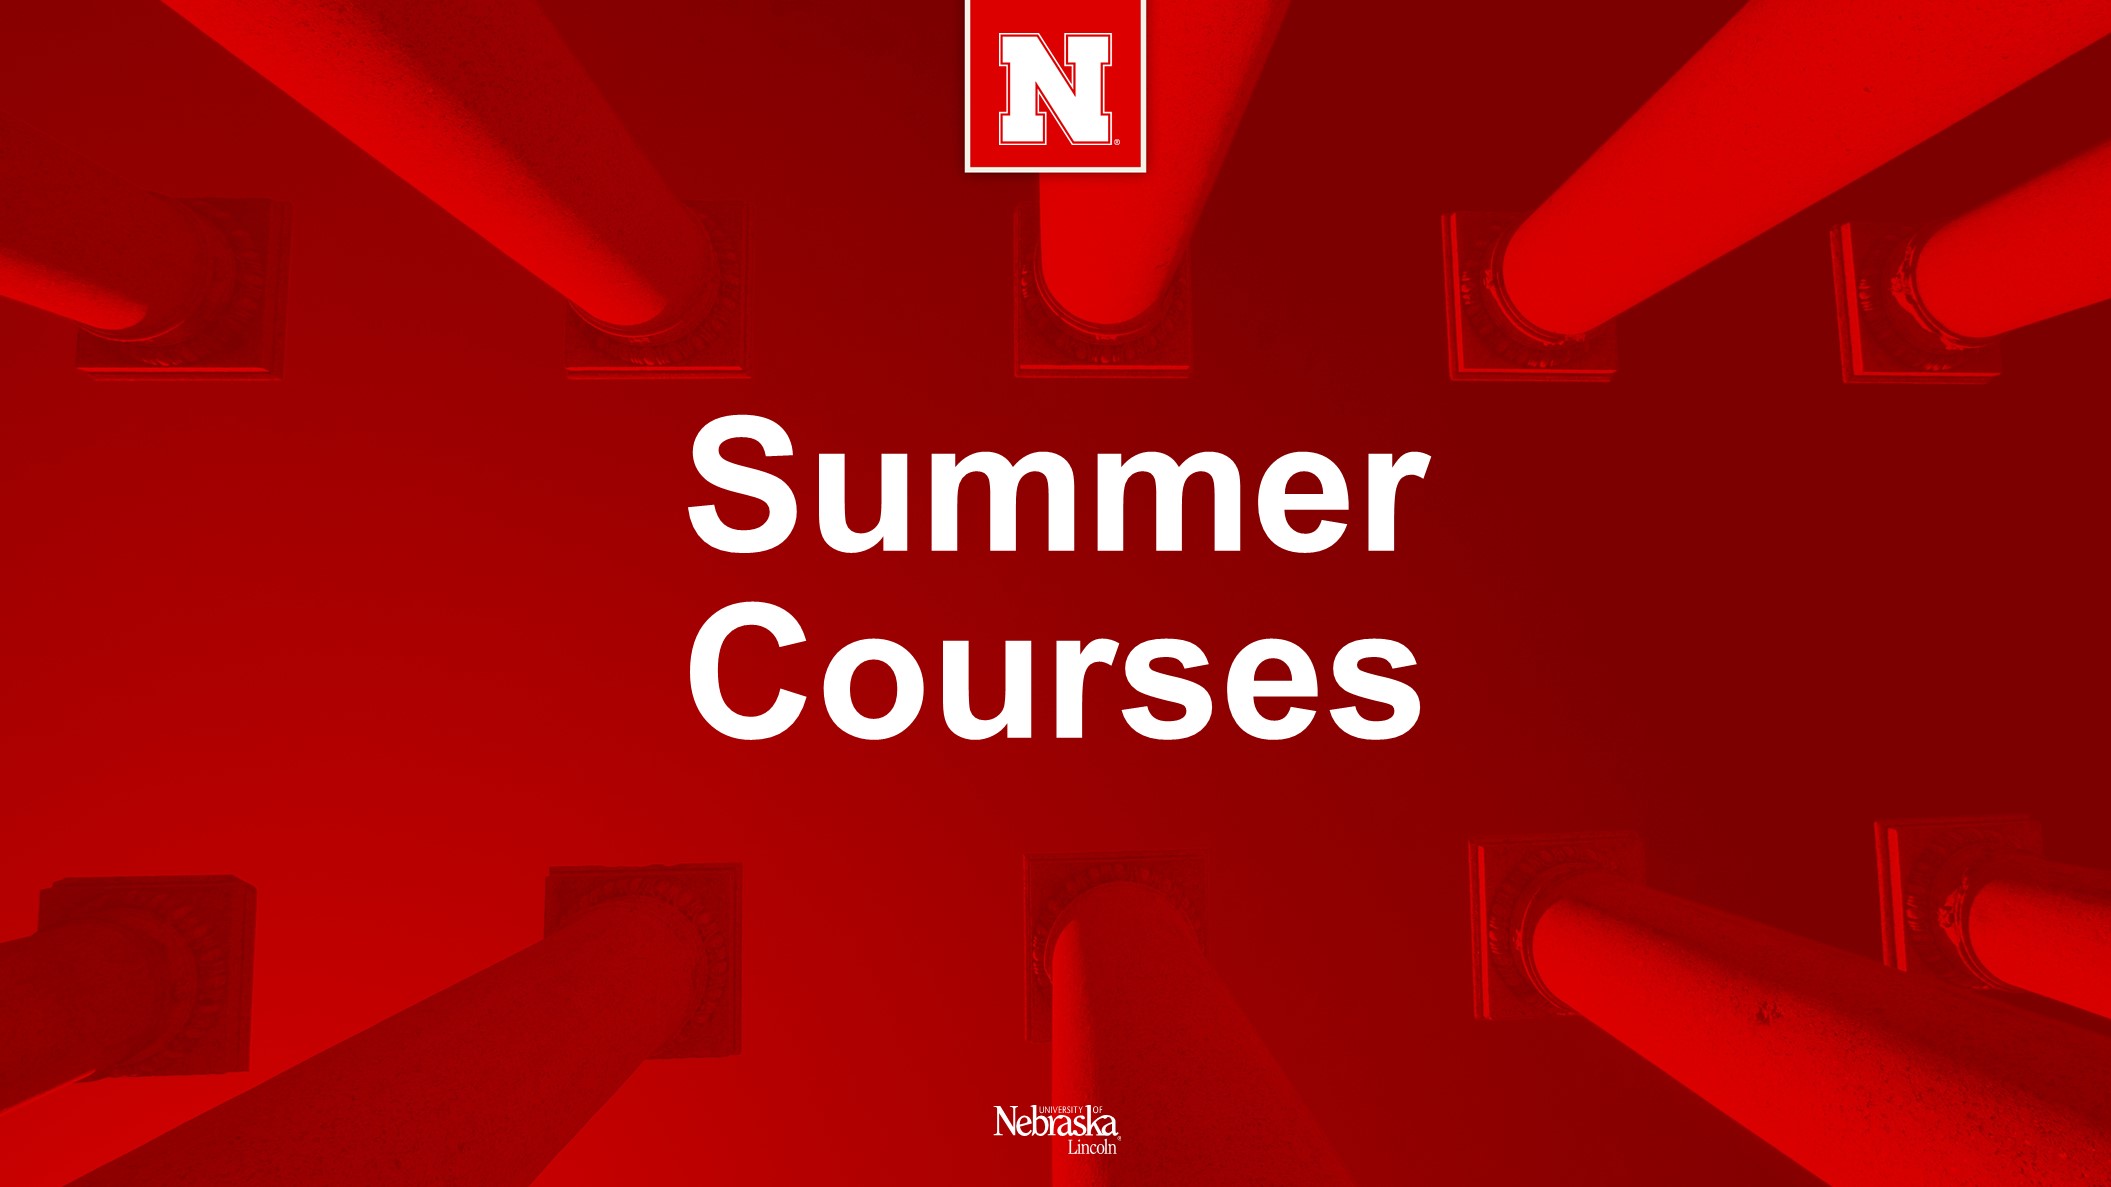 Summer Courses Announce University of NebraskaLincoln